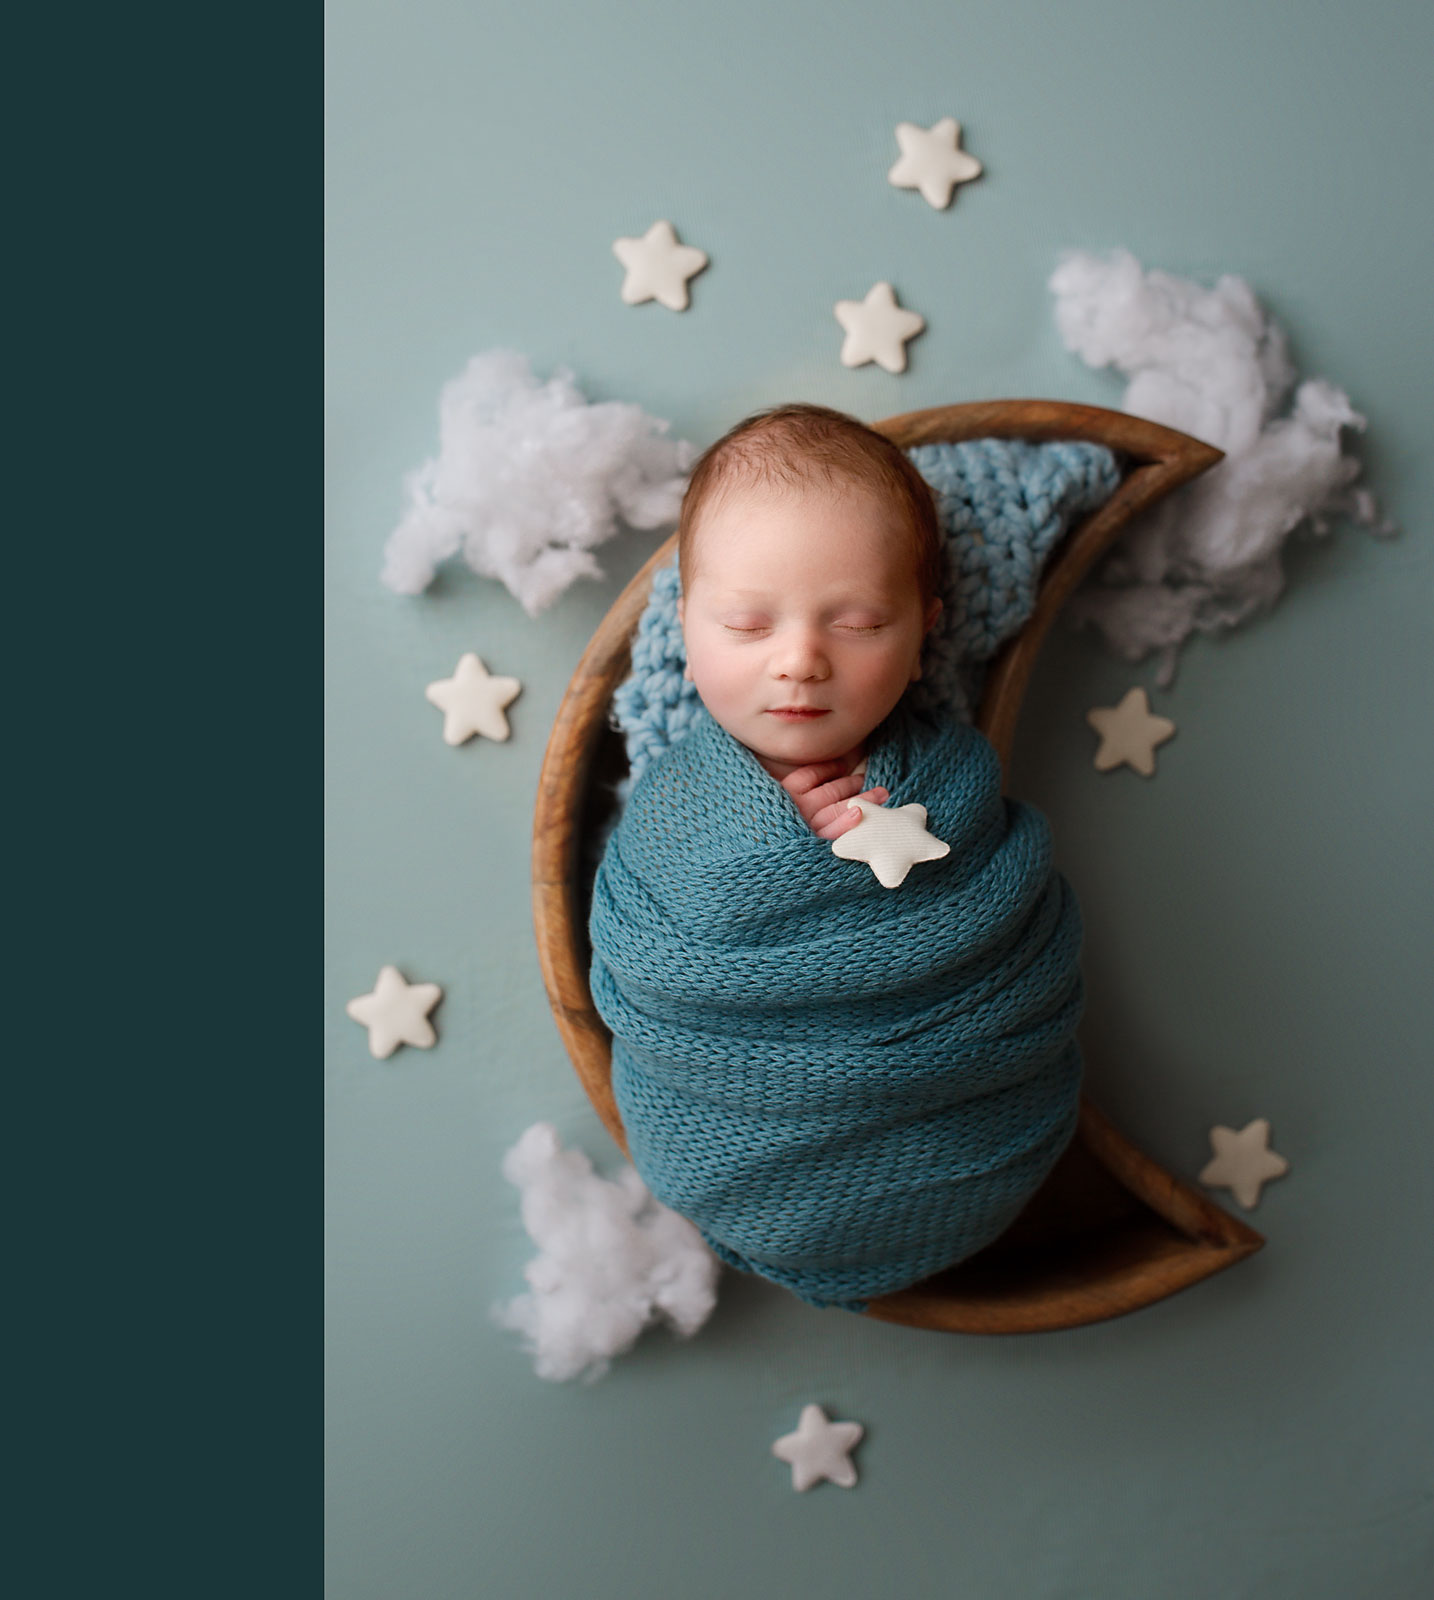 Hillsborough Newborn Photo Shoot